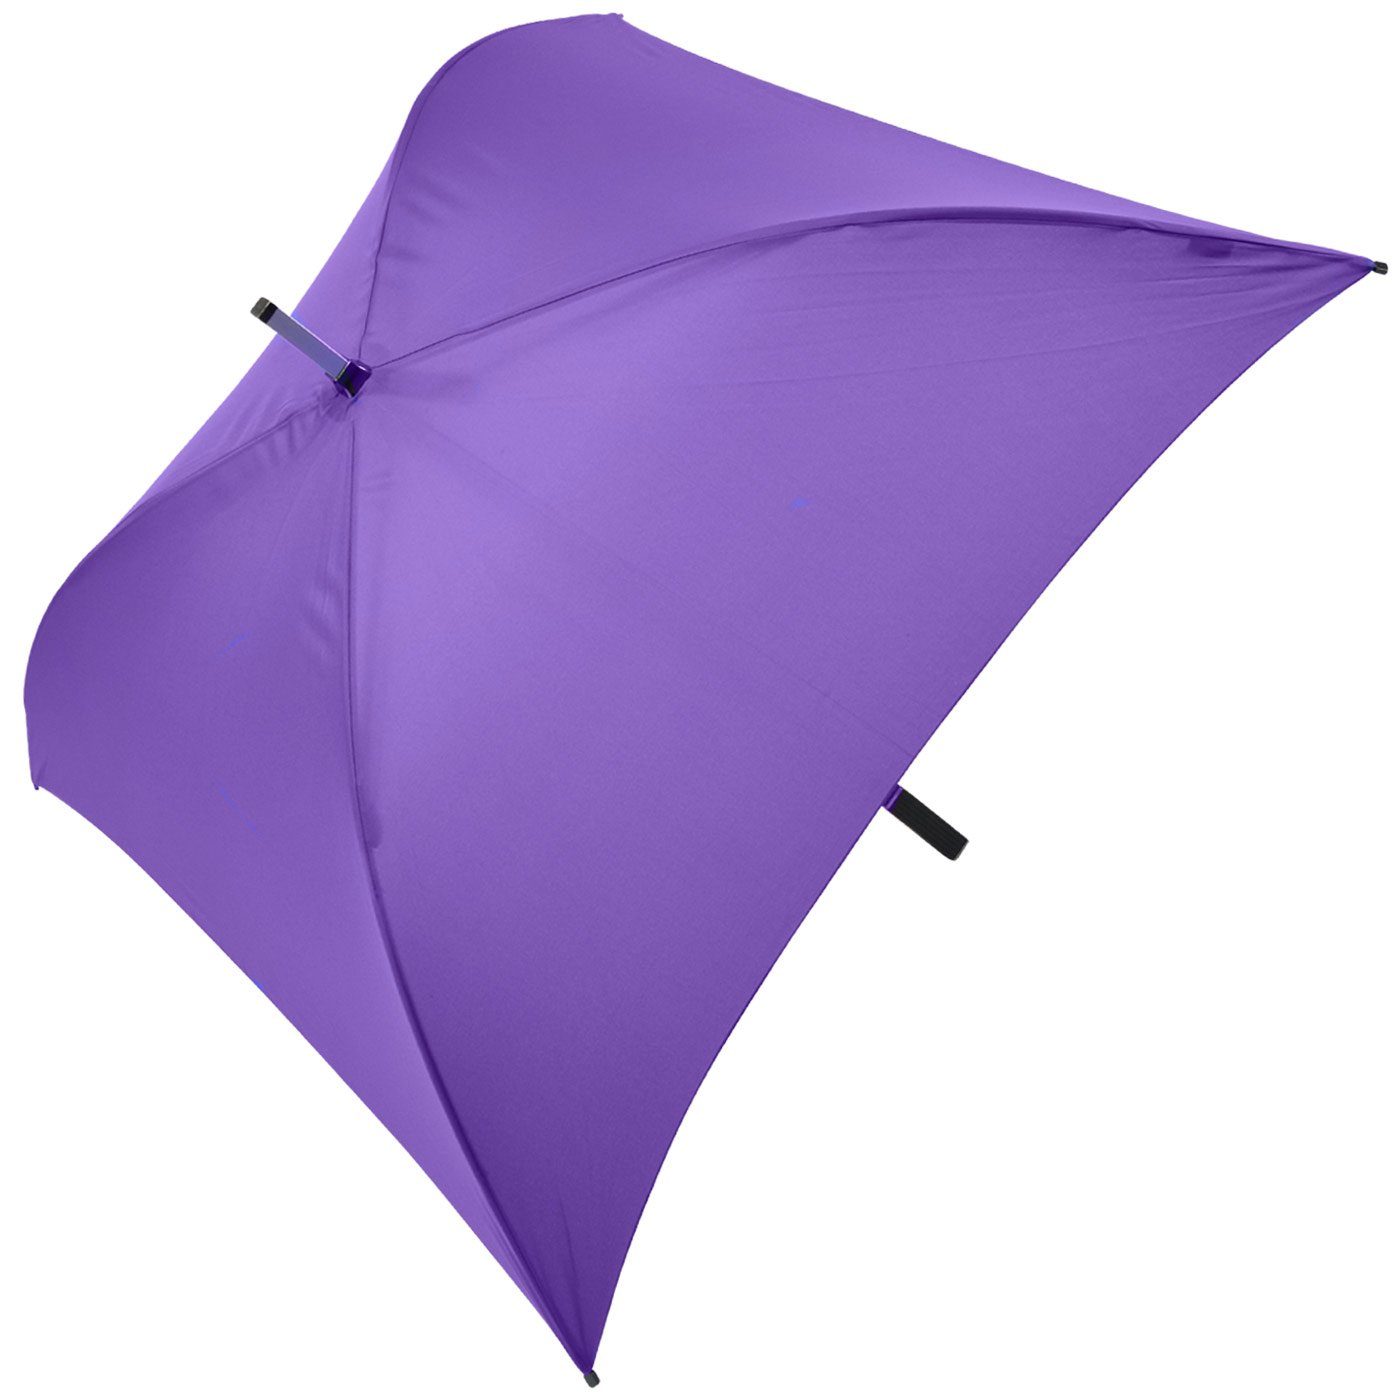 Langregenschirm Impliva voll ganz quadratischer der Square® violett Regenschirm, besondere Regenschirm All